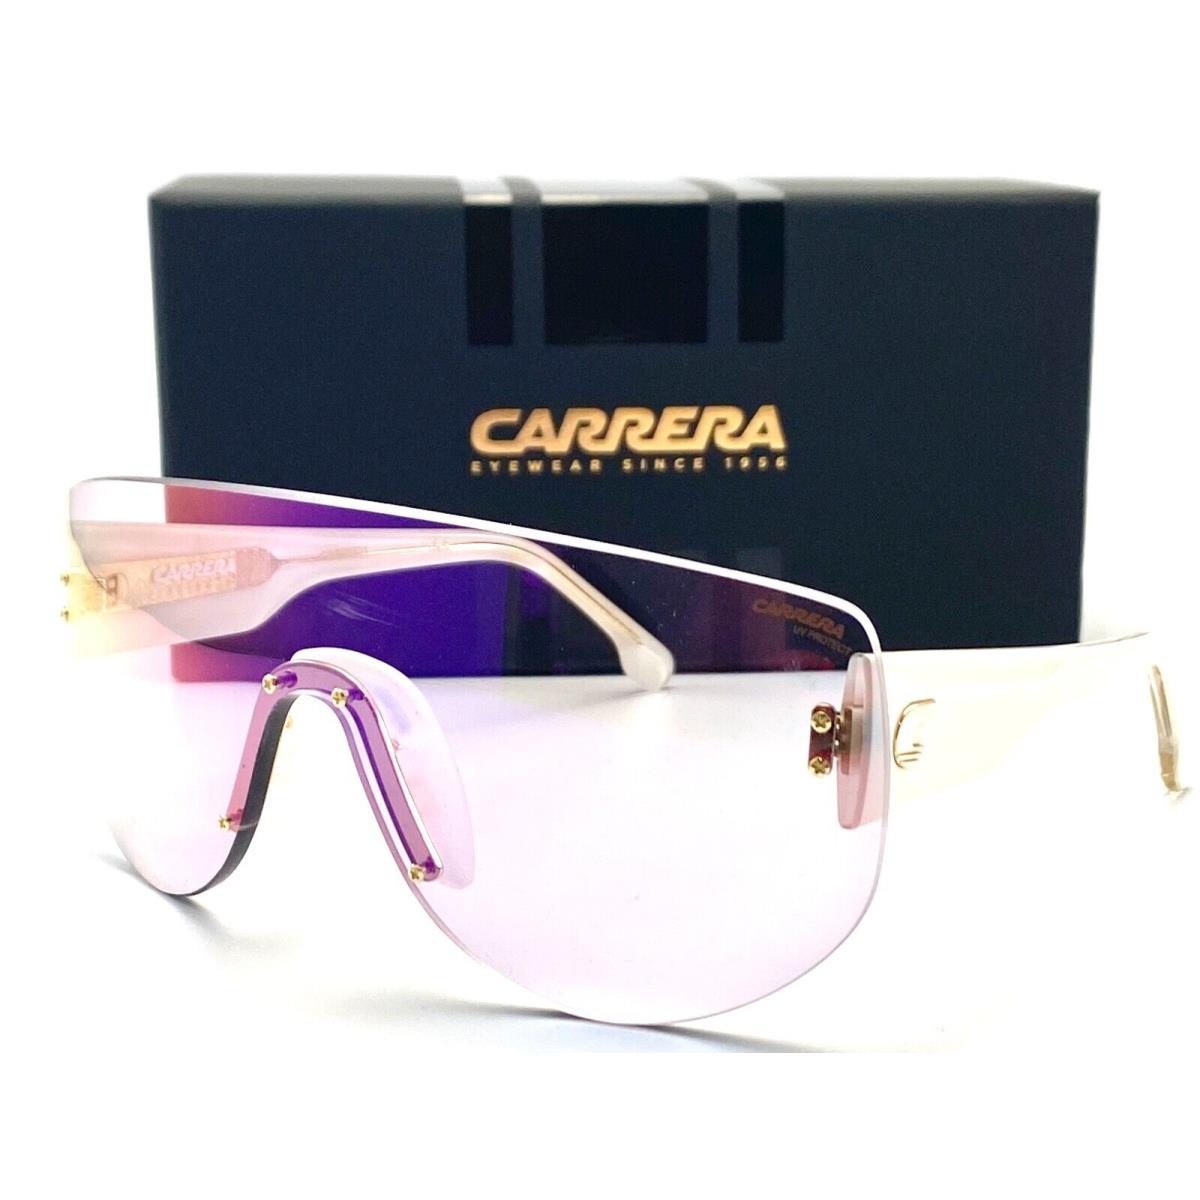 Carrera Flagbag 12 2UCTE White Sunglasses 99-01 140 V W/case